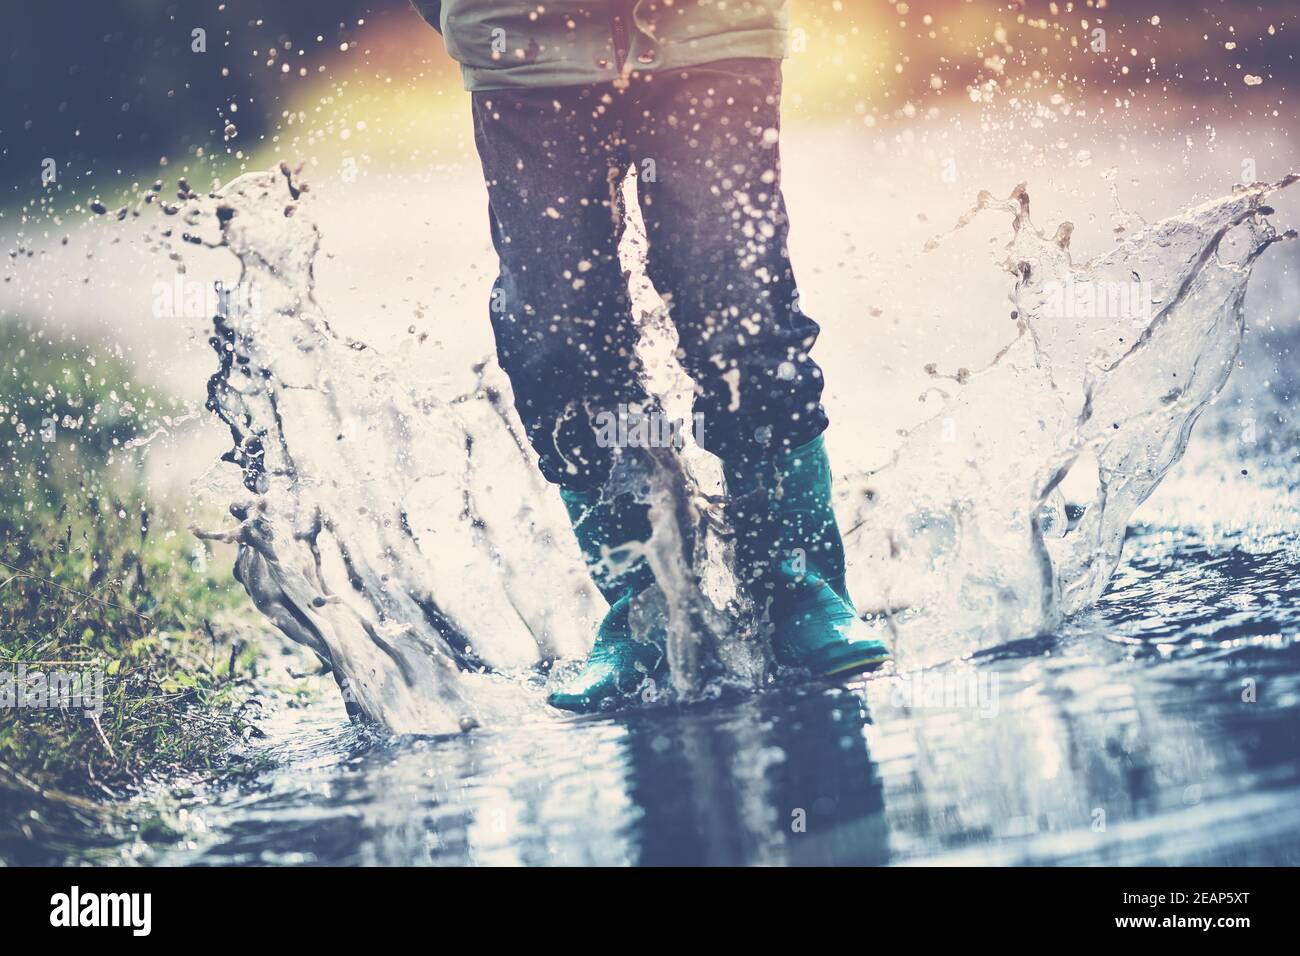 Kind zu Fuß in Gummistiefel in Pfütze auf Regenwetter Stockfoto